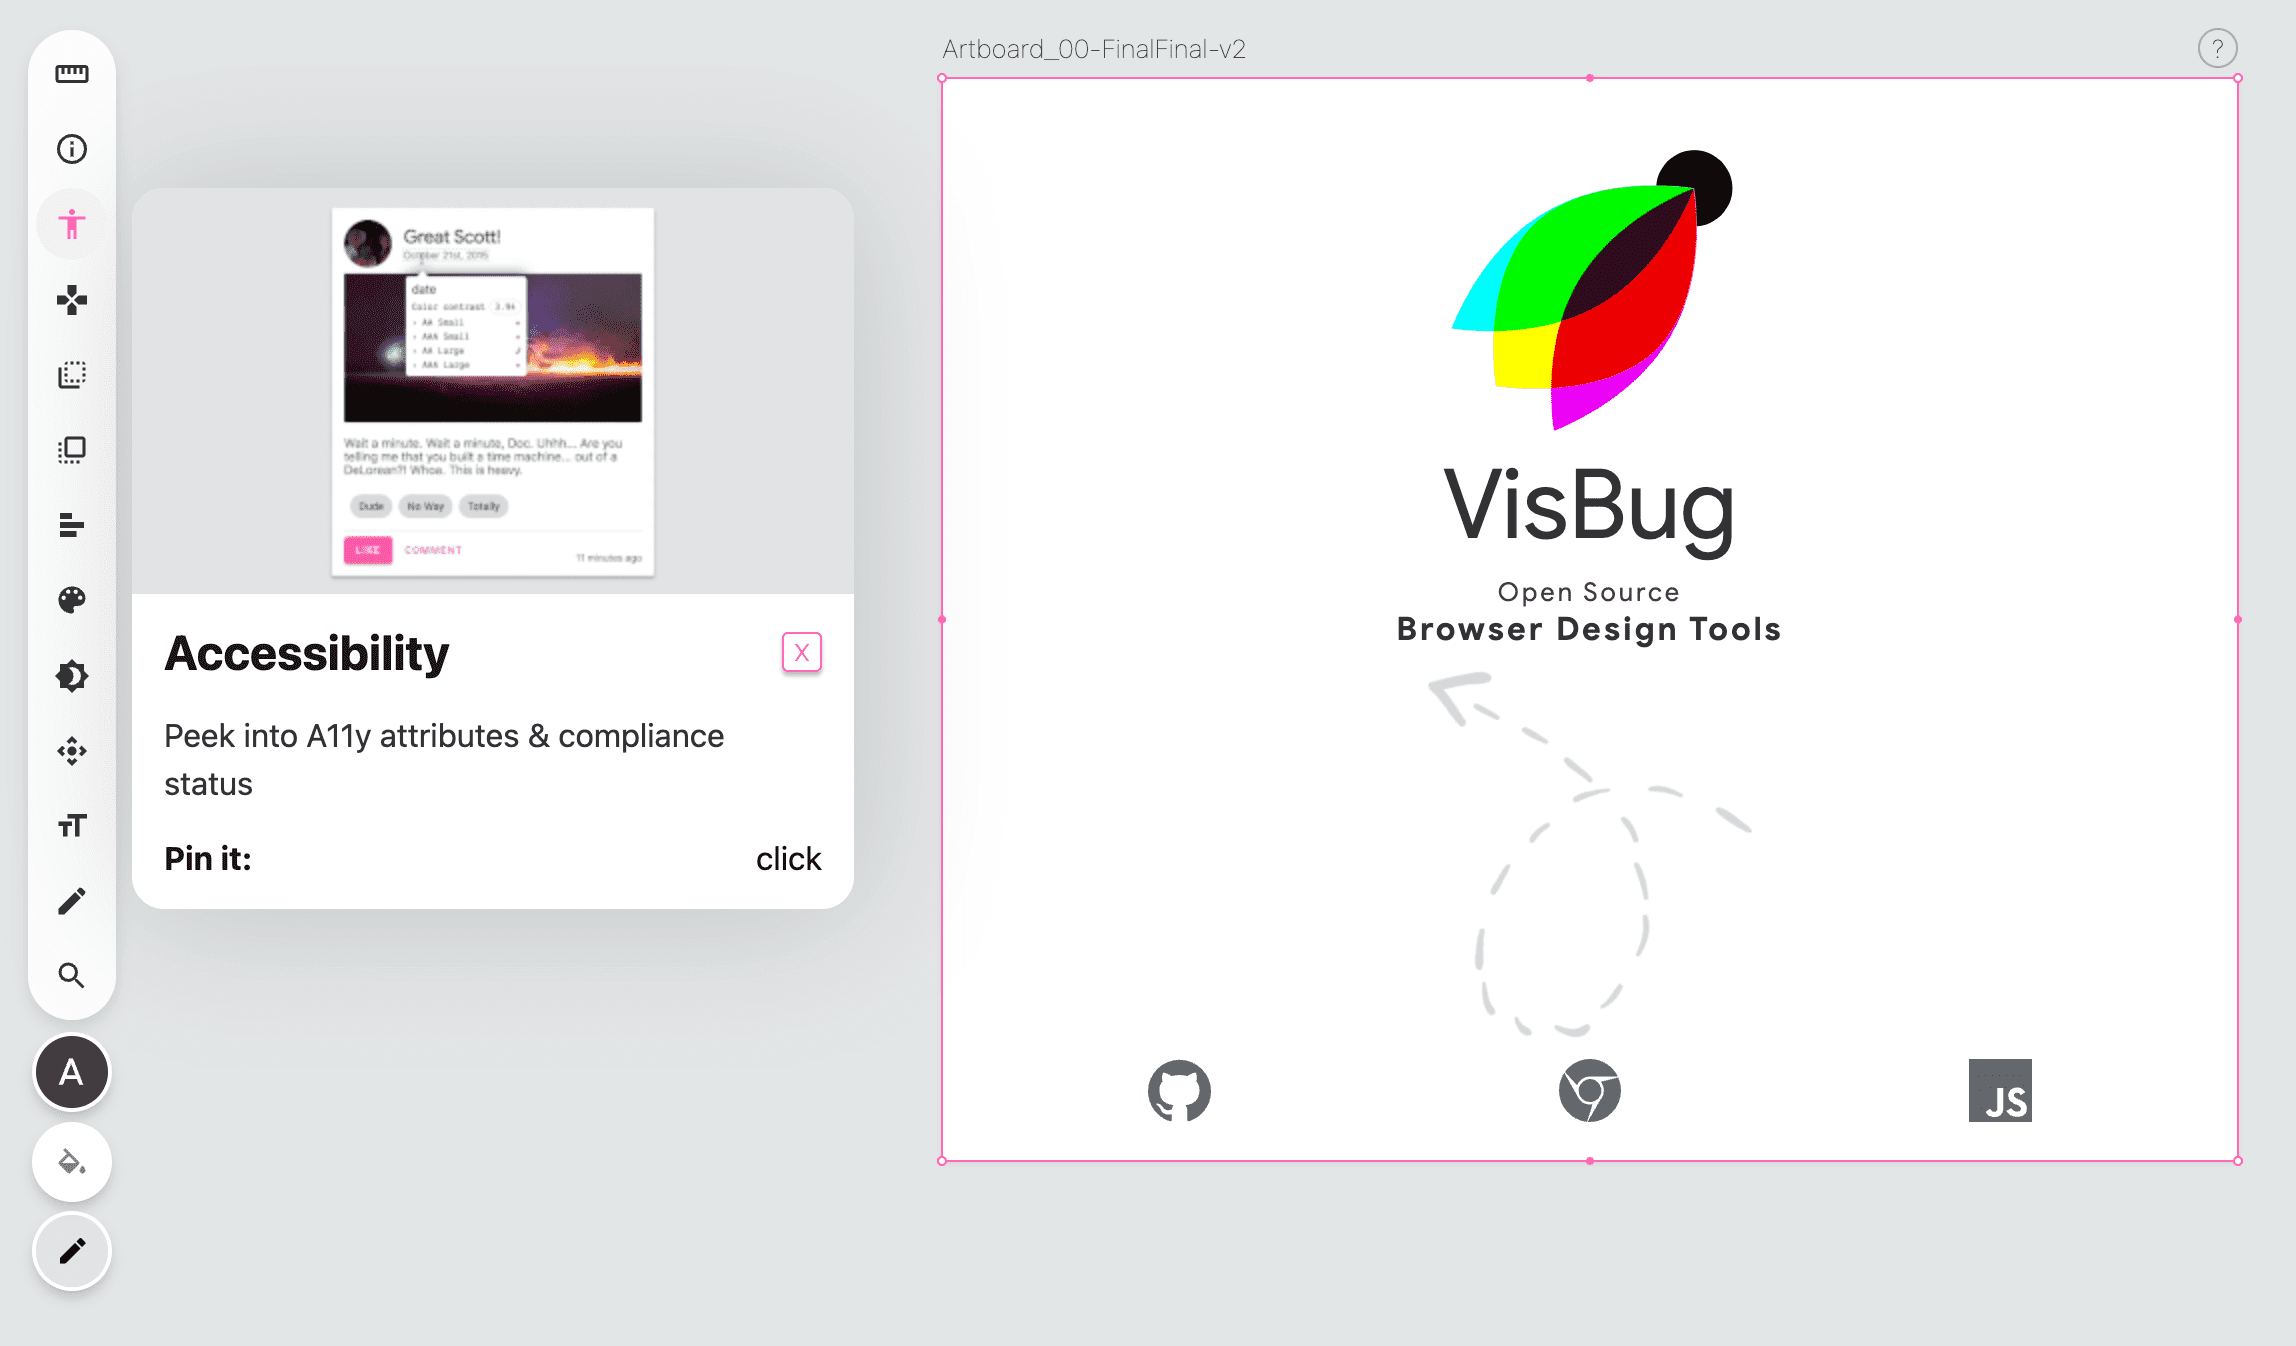 Screenshot der VisBug-Symbolleiste auf der linken Seite einer leeren Seite, das Symbol für die Bedienungshilfe ist rosa und ein Pop-over wird angezeigt, das eine Anleitung zum Tool enthält.